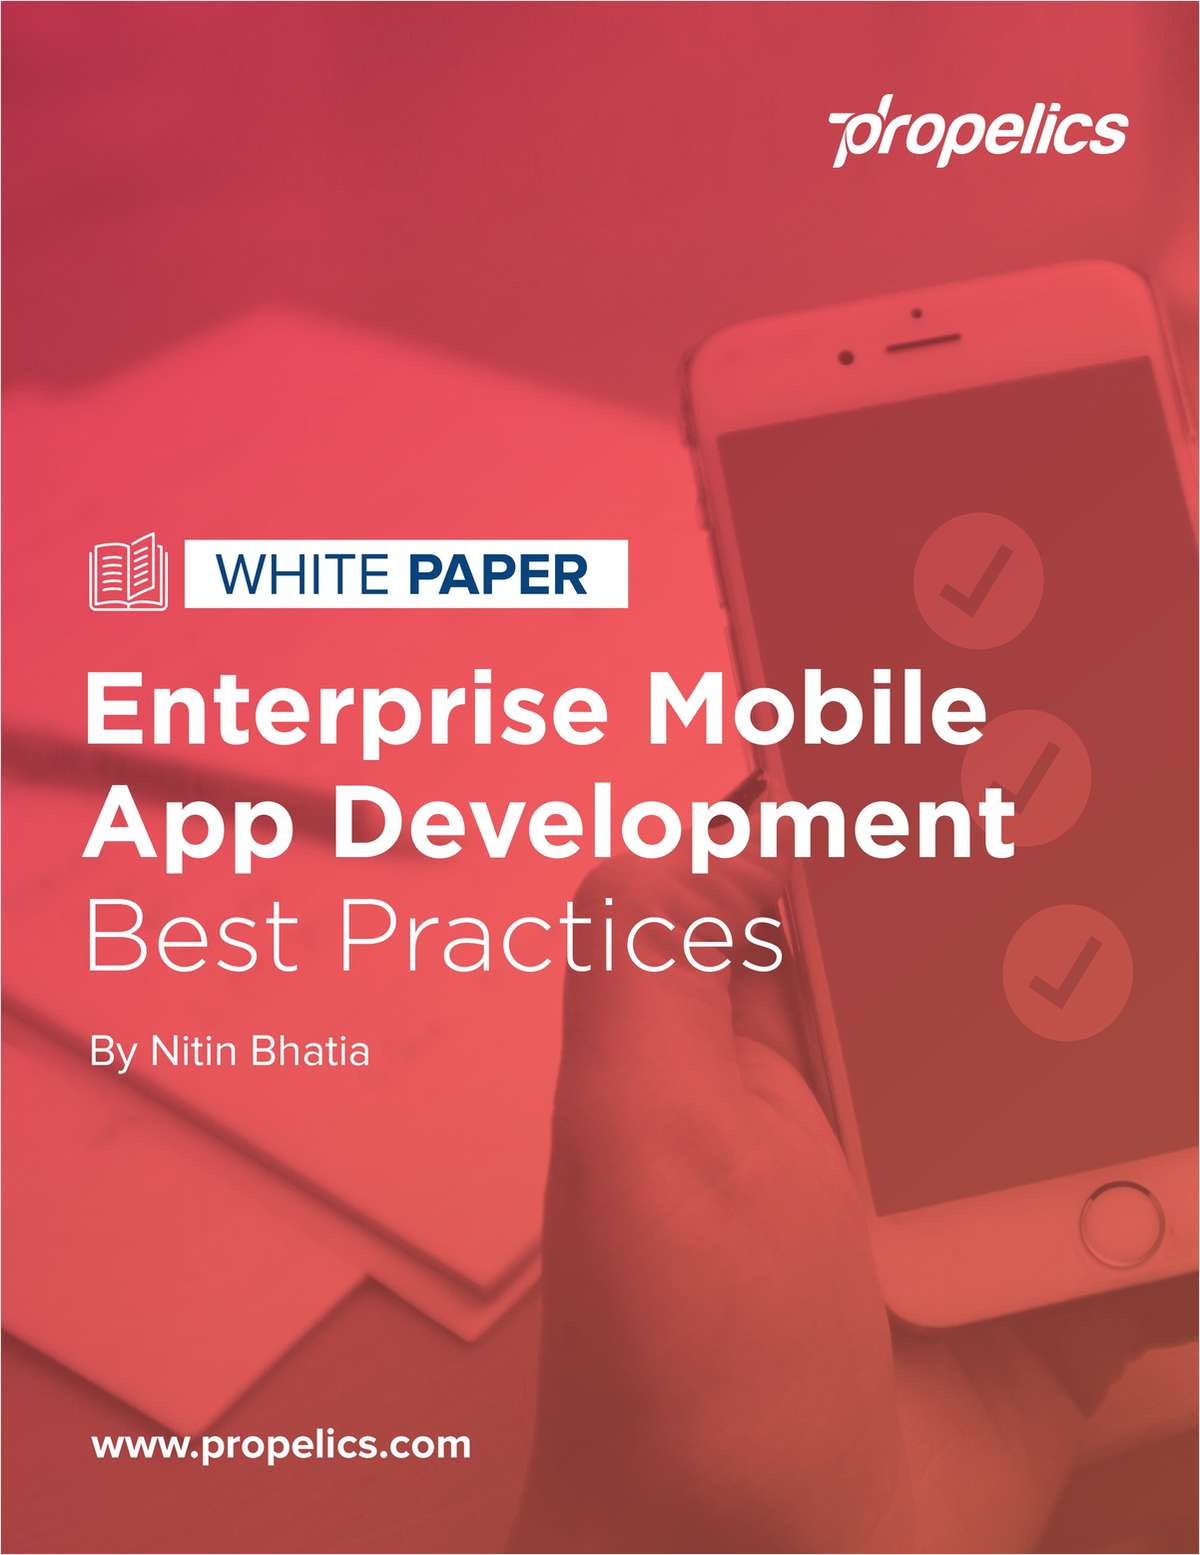 White Paper: Enterprise Mobile App Development Best Practices